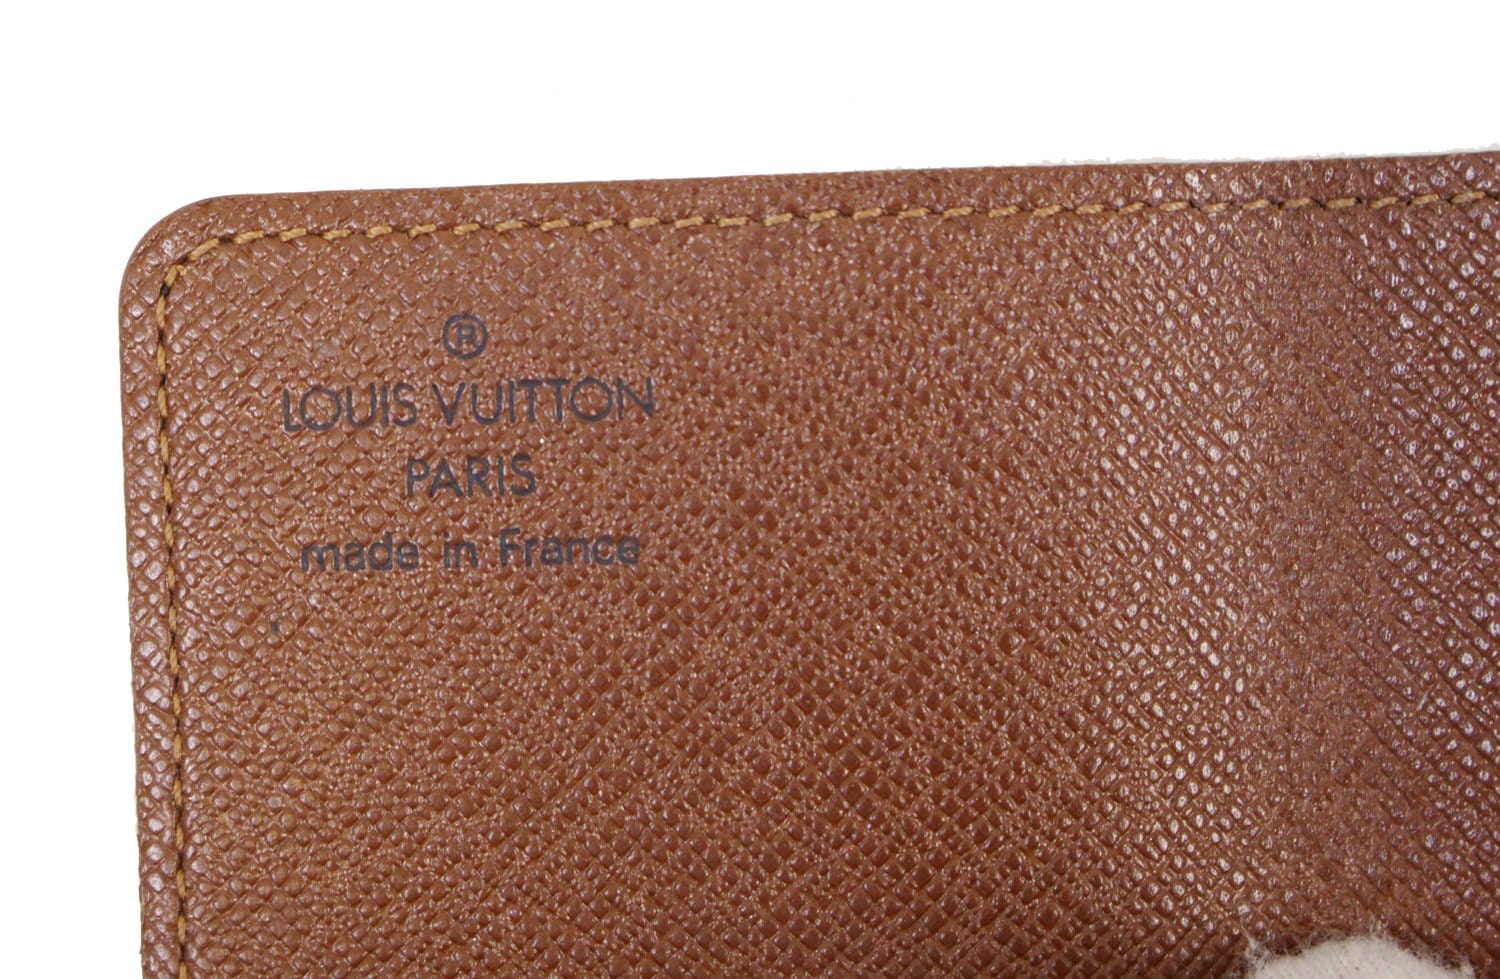 Authentic Louis Vuitton ~ Monogram Canvas Card Holder